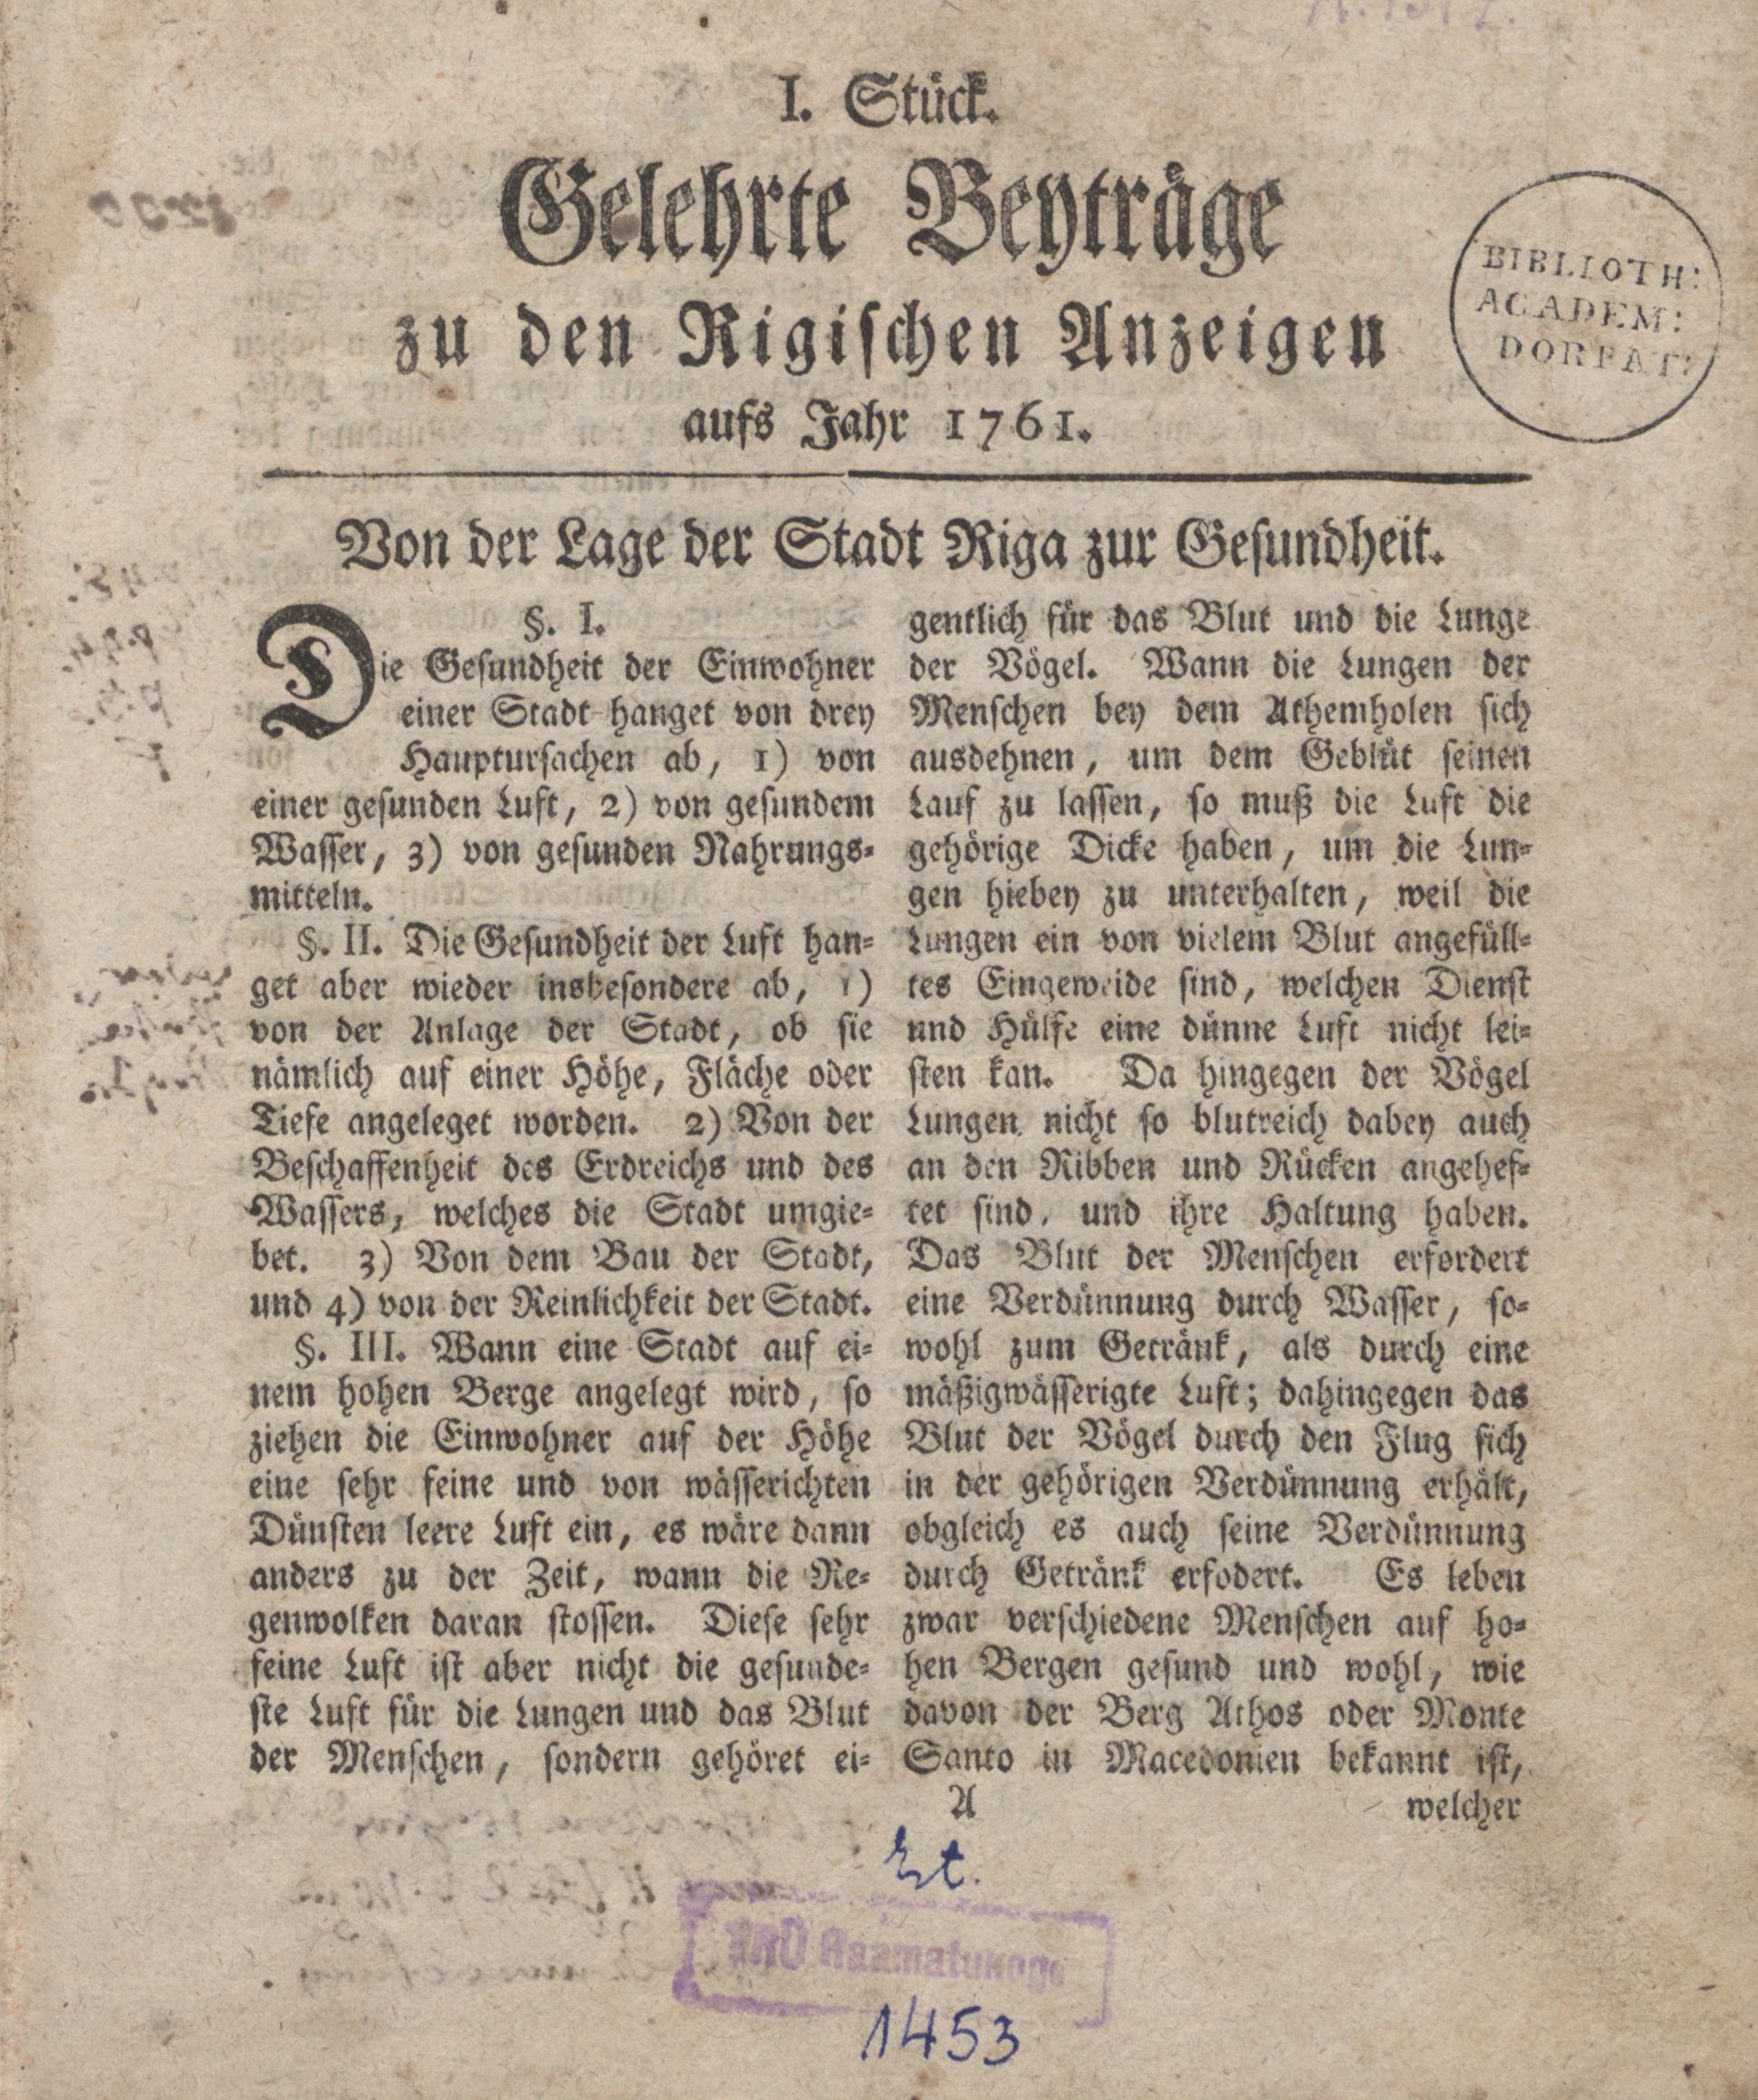 Gelehrte Beyträge zu den Rigischen Anzeigen (1761 – 1767) | 1. (1) Title page